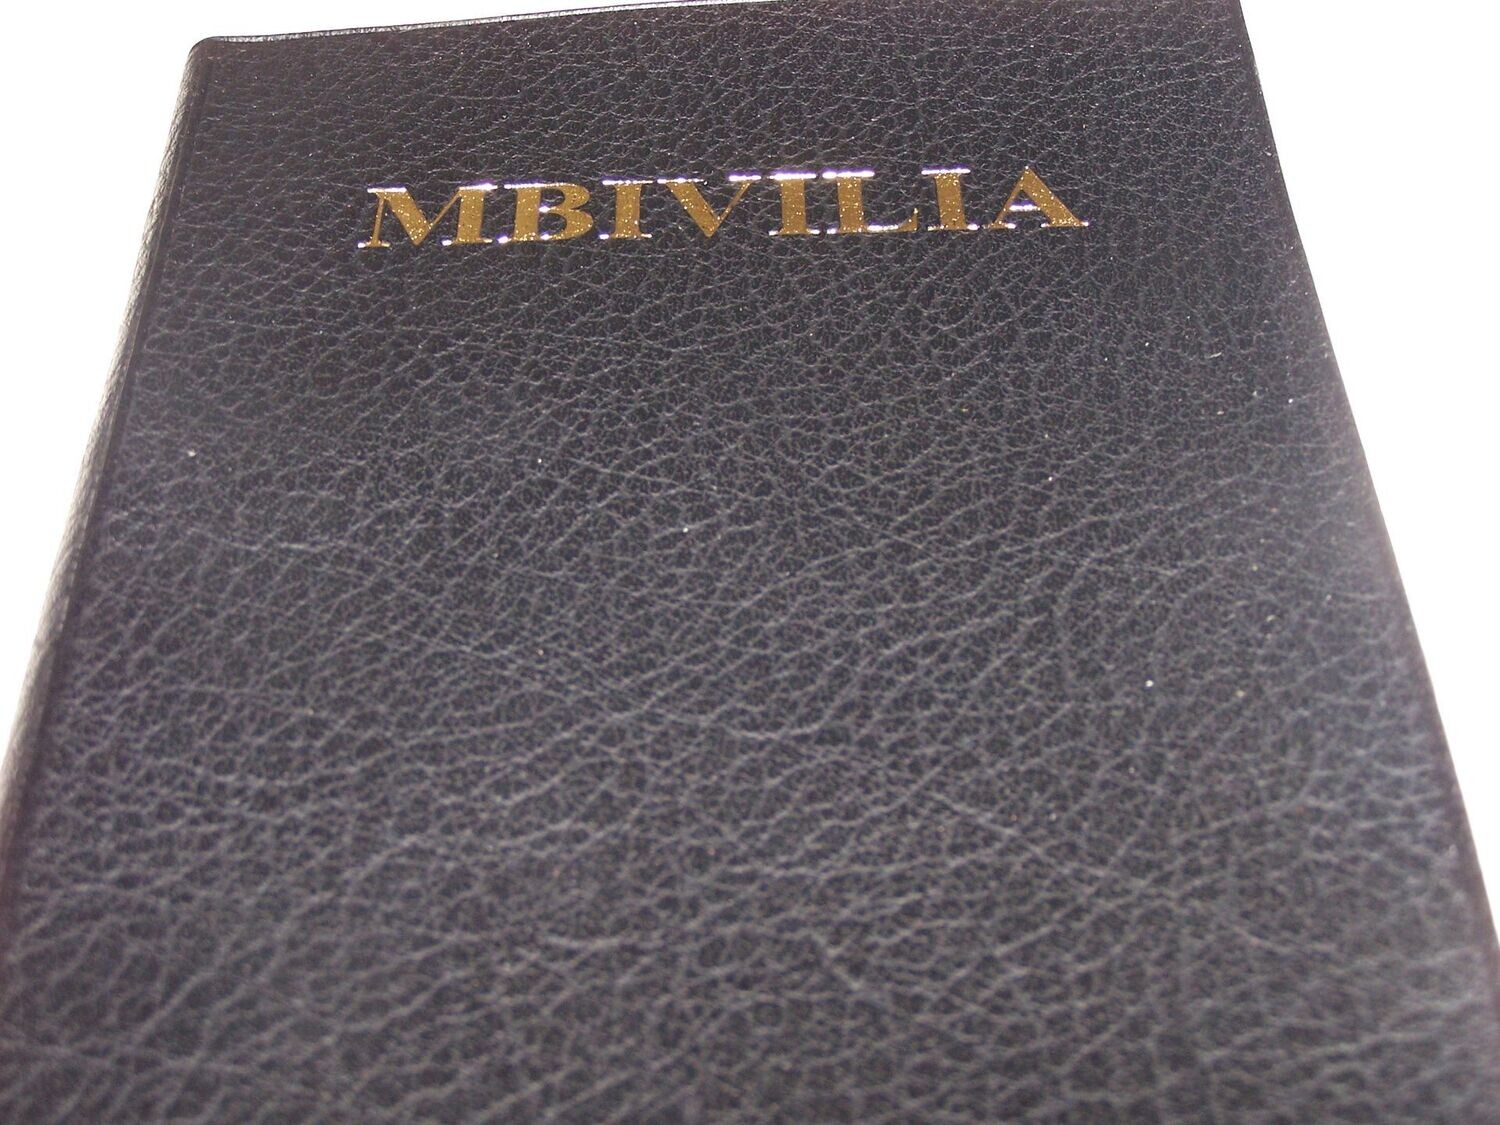 MBIVILIA : Kamba Bible